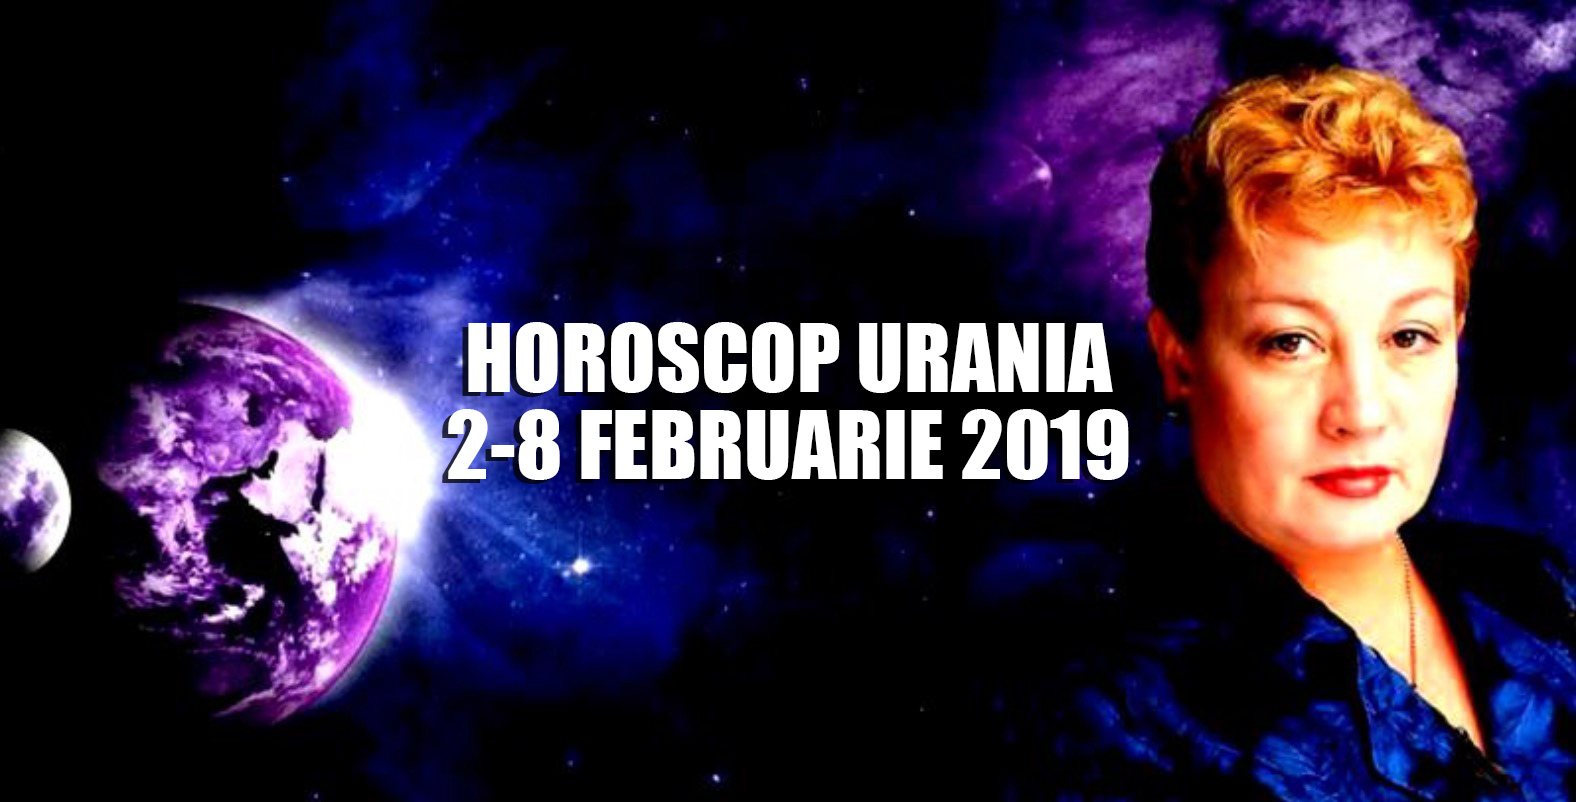 Horoscop Urania 2-8 februarie 2019 - două fenomene astrologice marcante